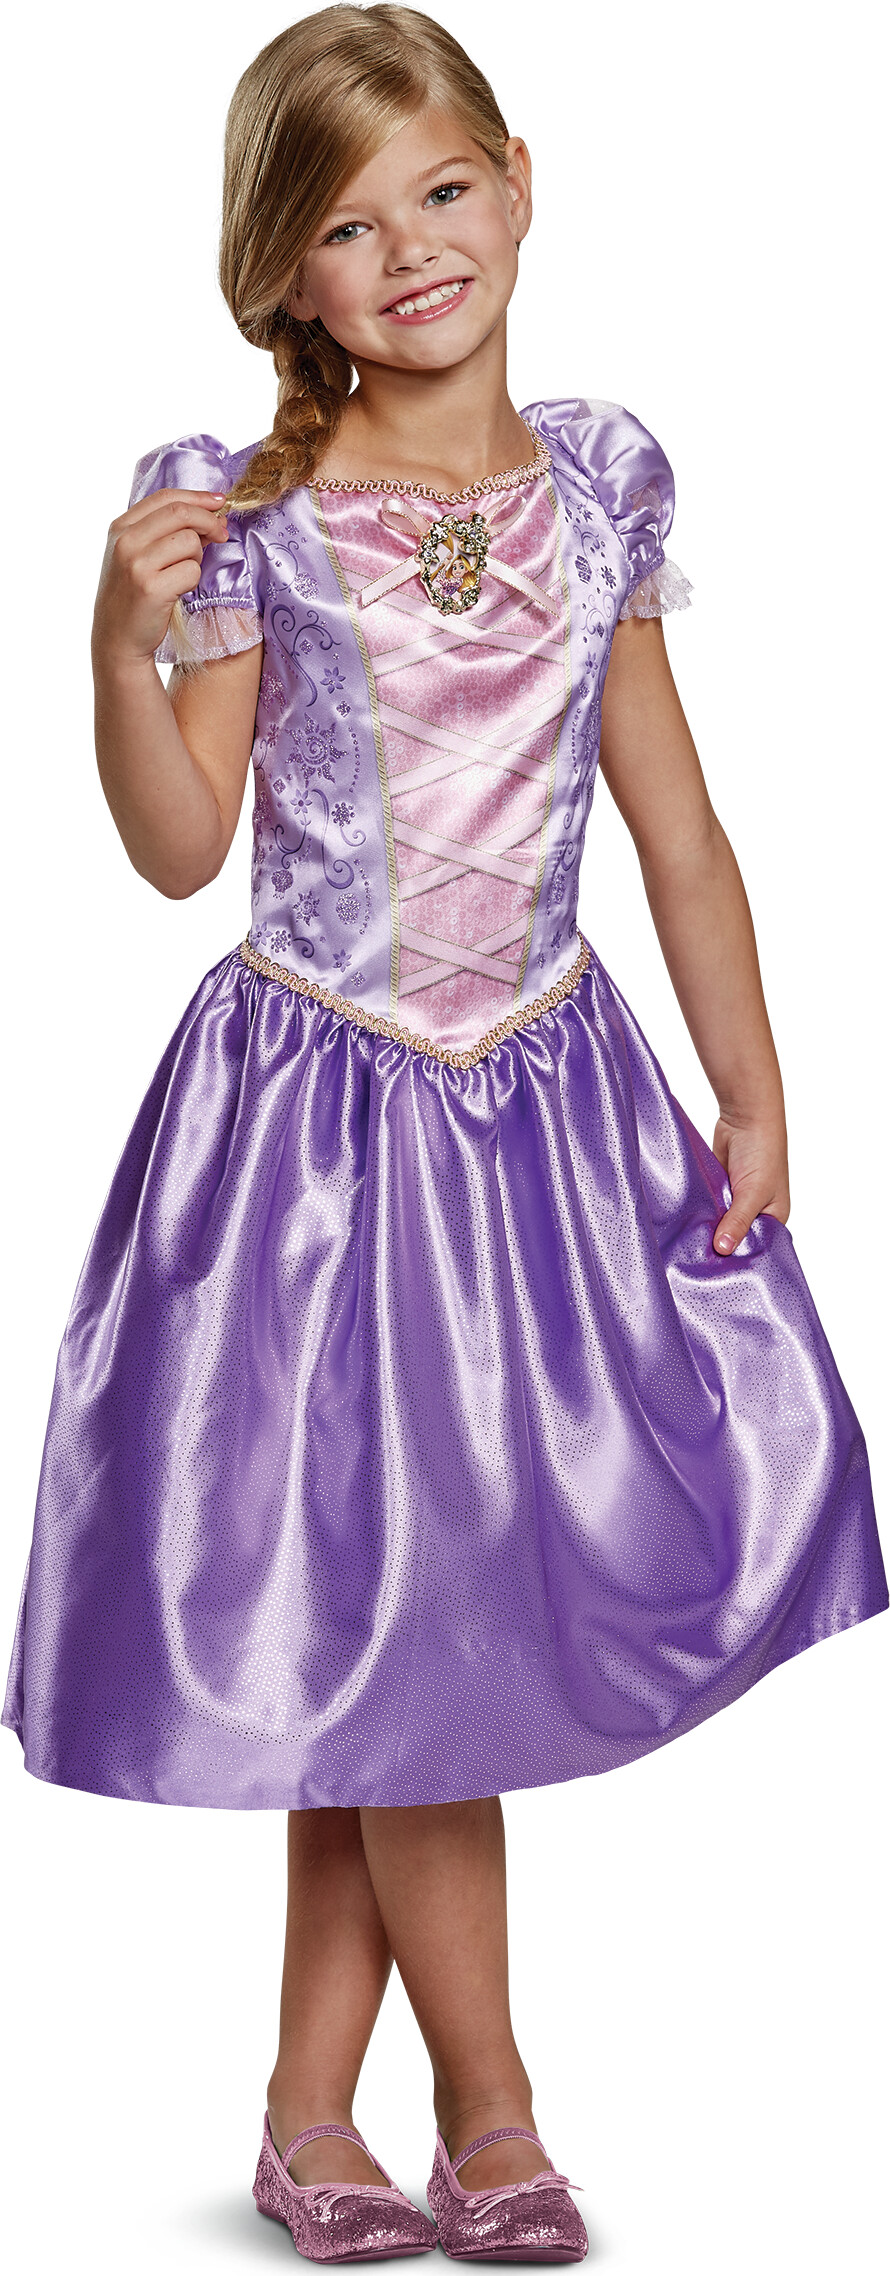 Billede af Rapunzel Kostume Til Børn - 116 Cm - Disney Princess